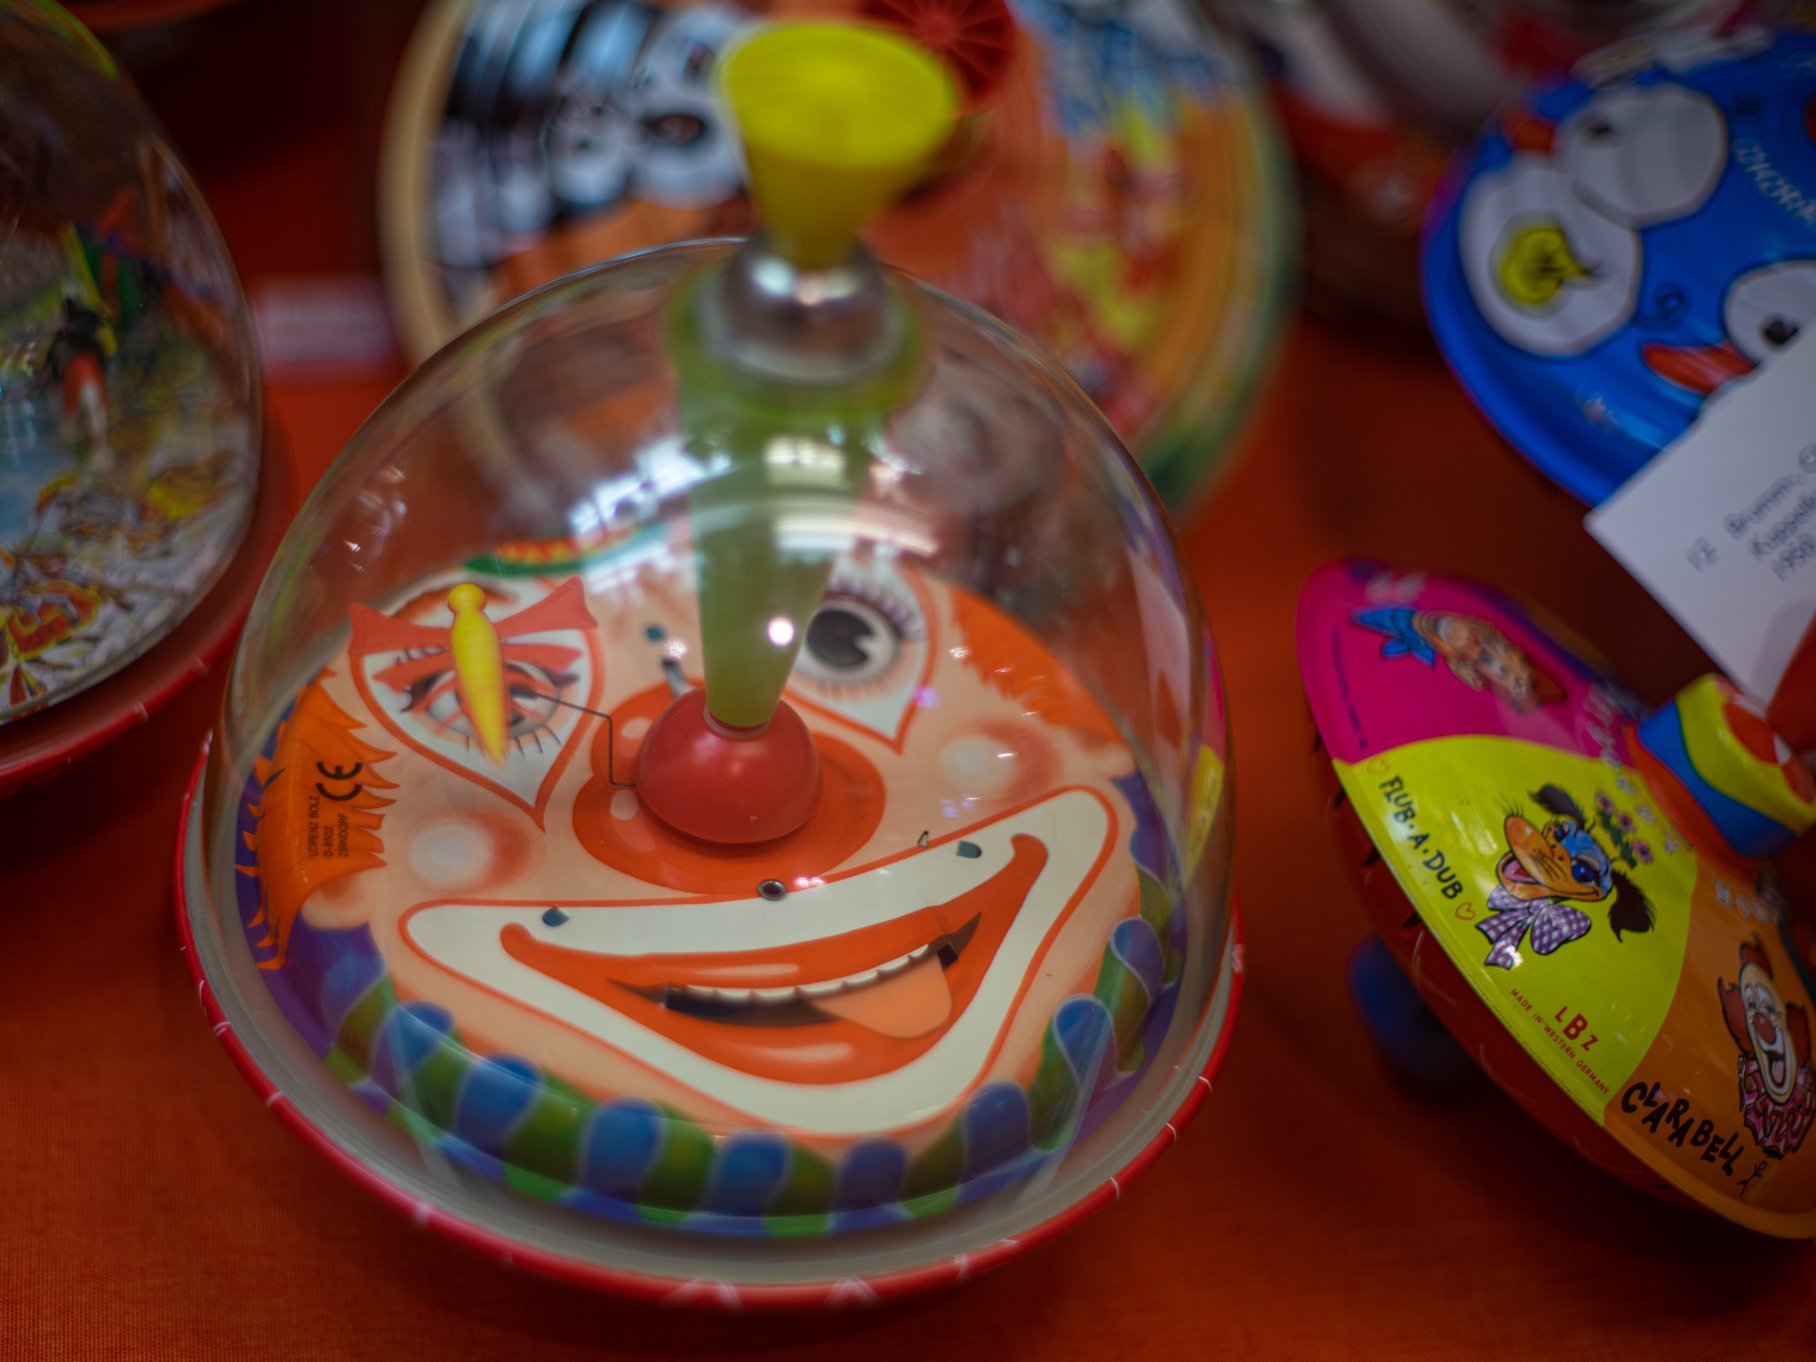 Kreisel mit einer durchsictigen Kuppel aus Plexiglas, unter der ein Clownsgesicht zu sehen ist